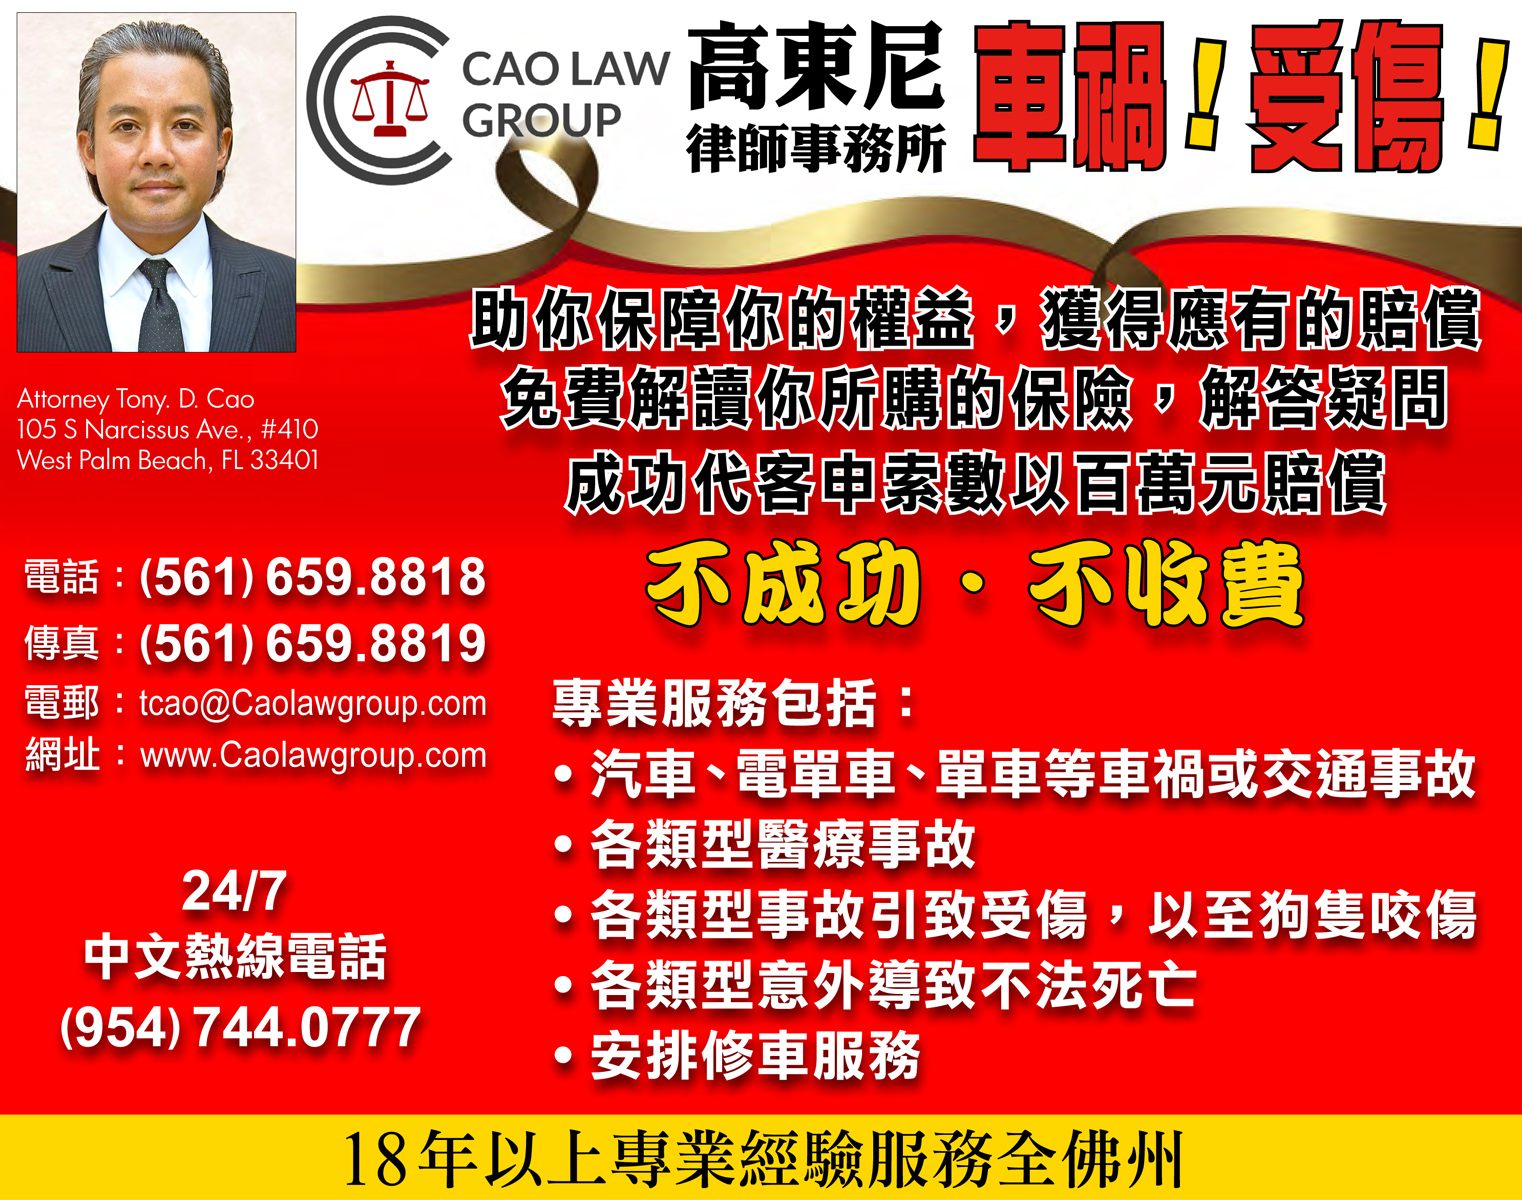 高東尼律師事務所 Cao Law Group